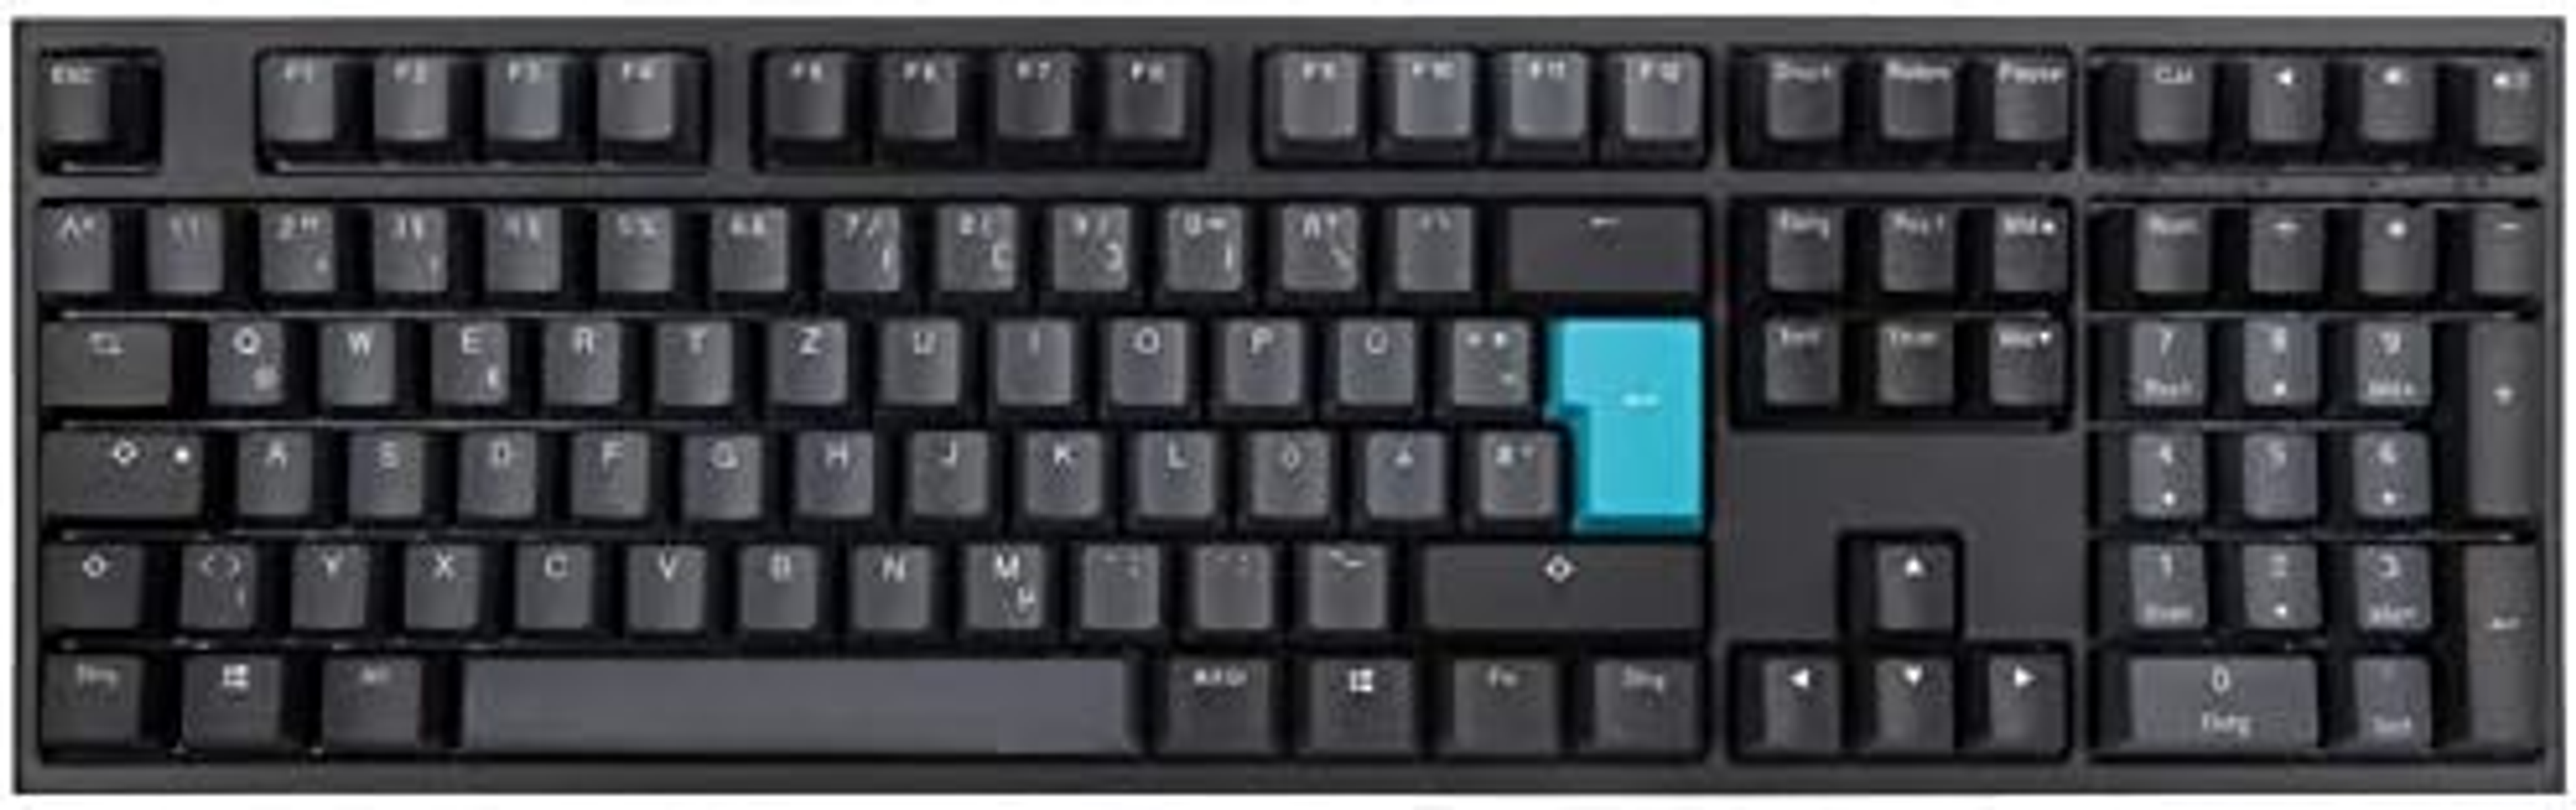 DKON1808-ADEPDZHBS, DUCKY Tastatur